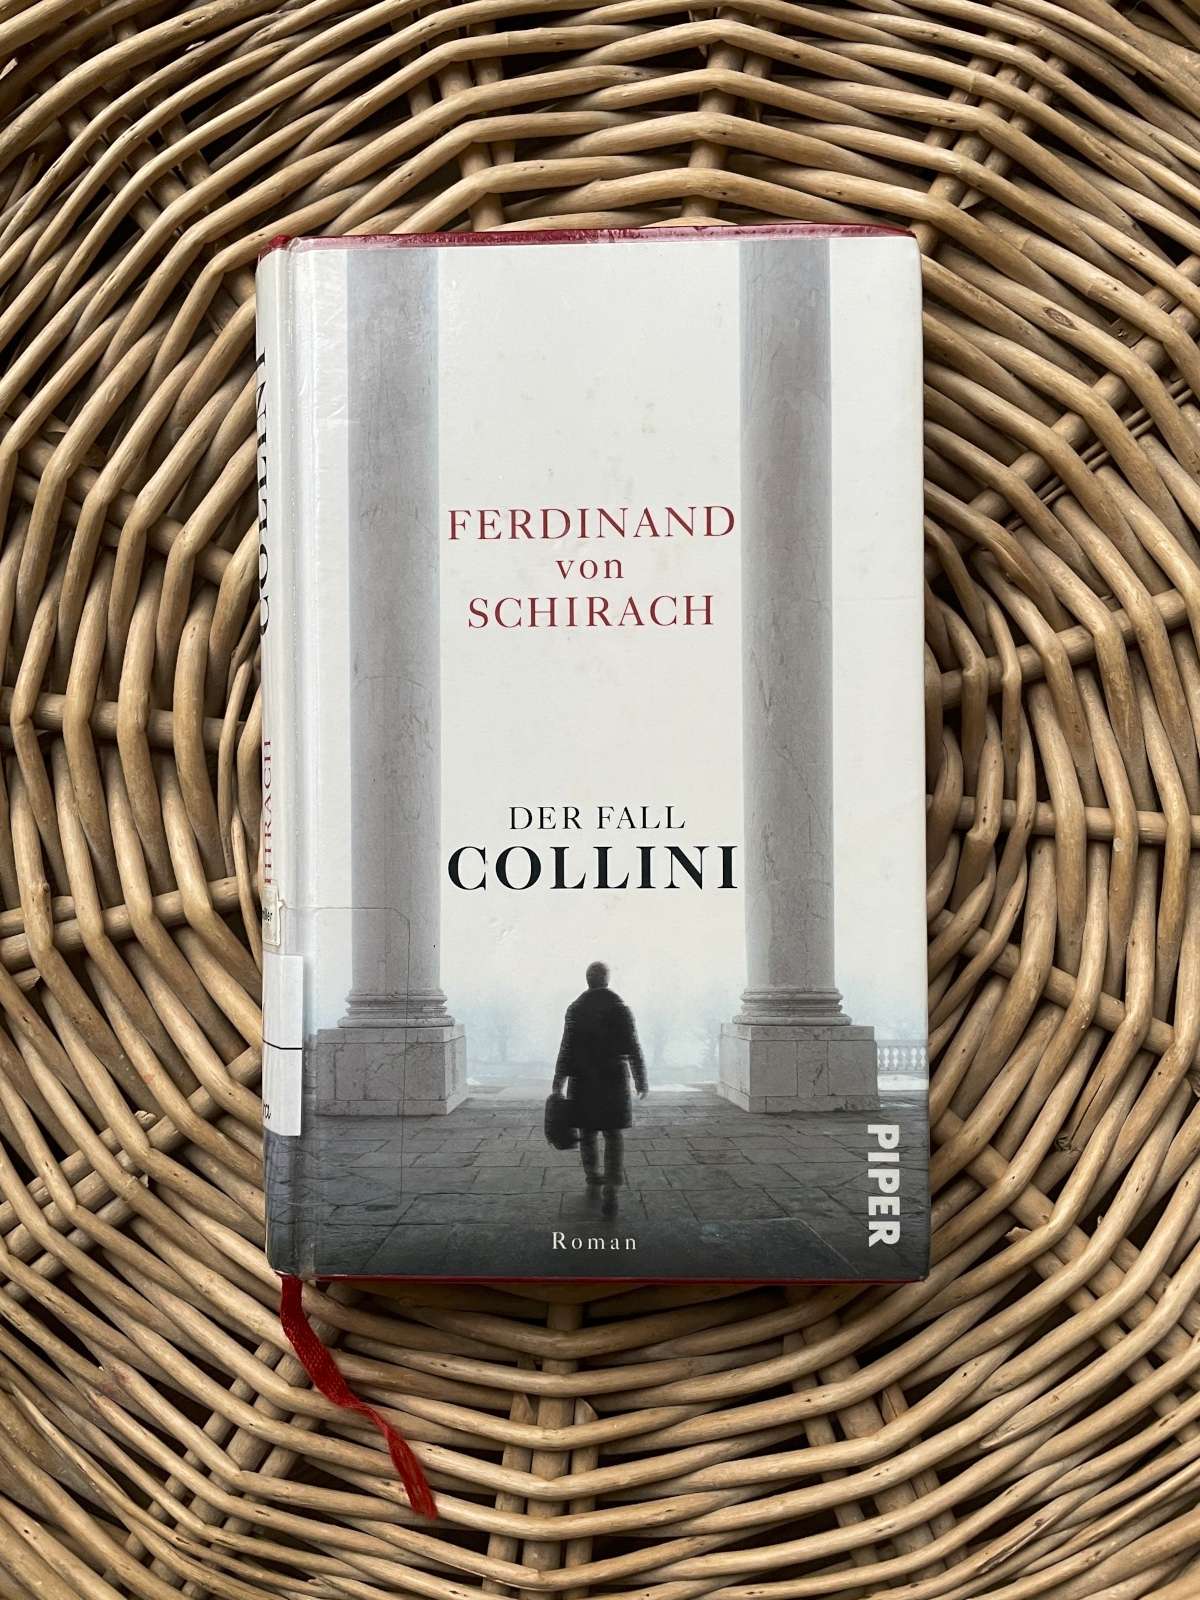 Buch von Ferdinand von Schirach – Der Fall Collini